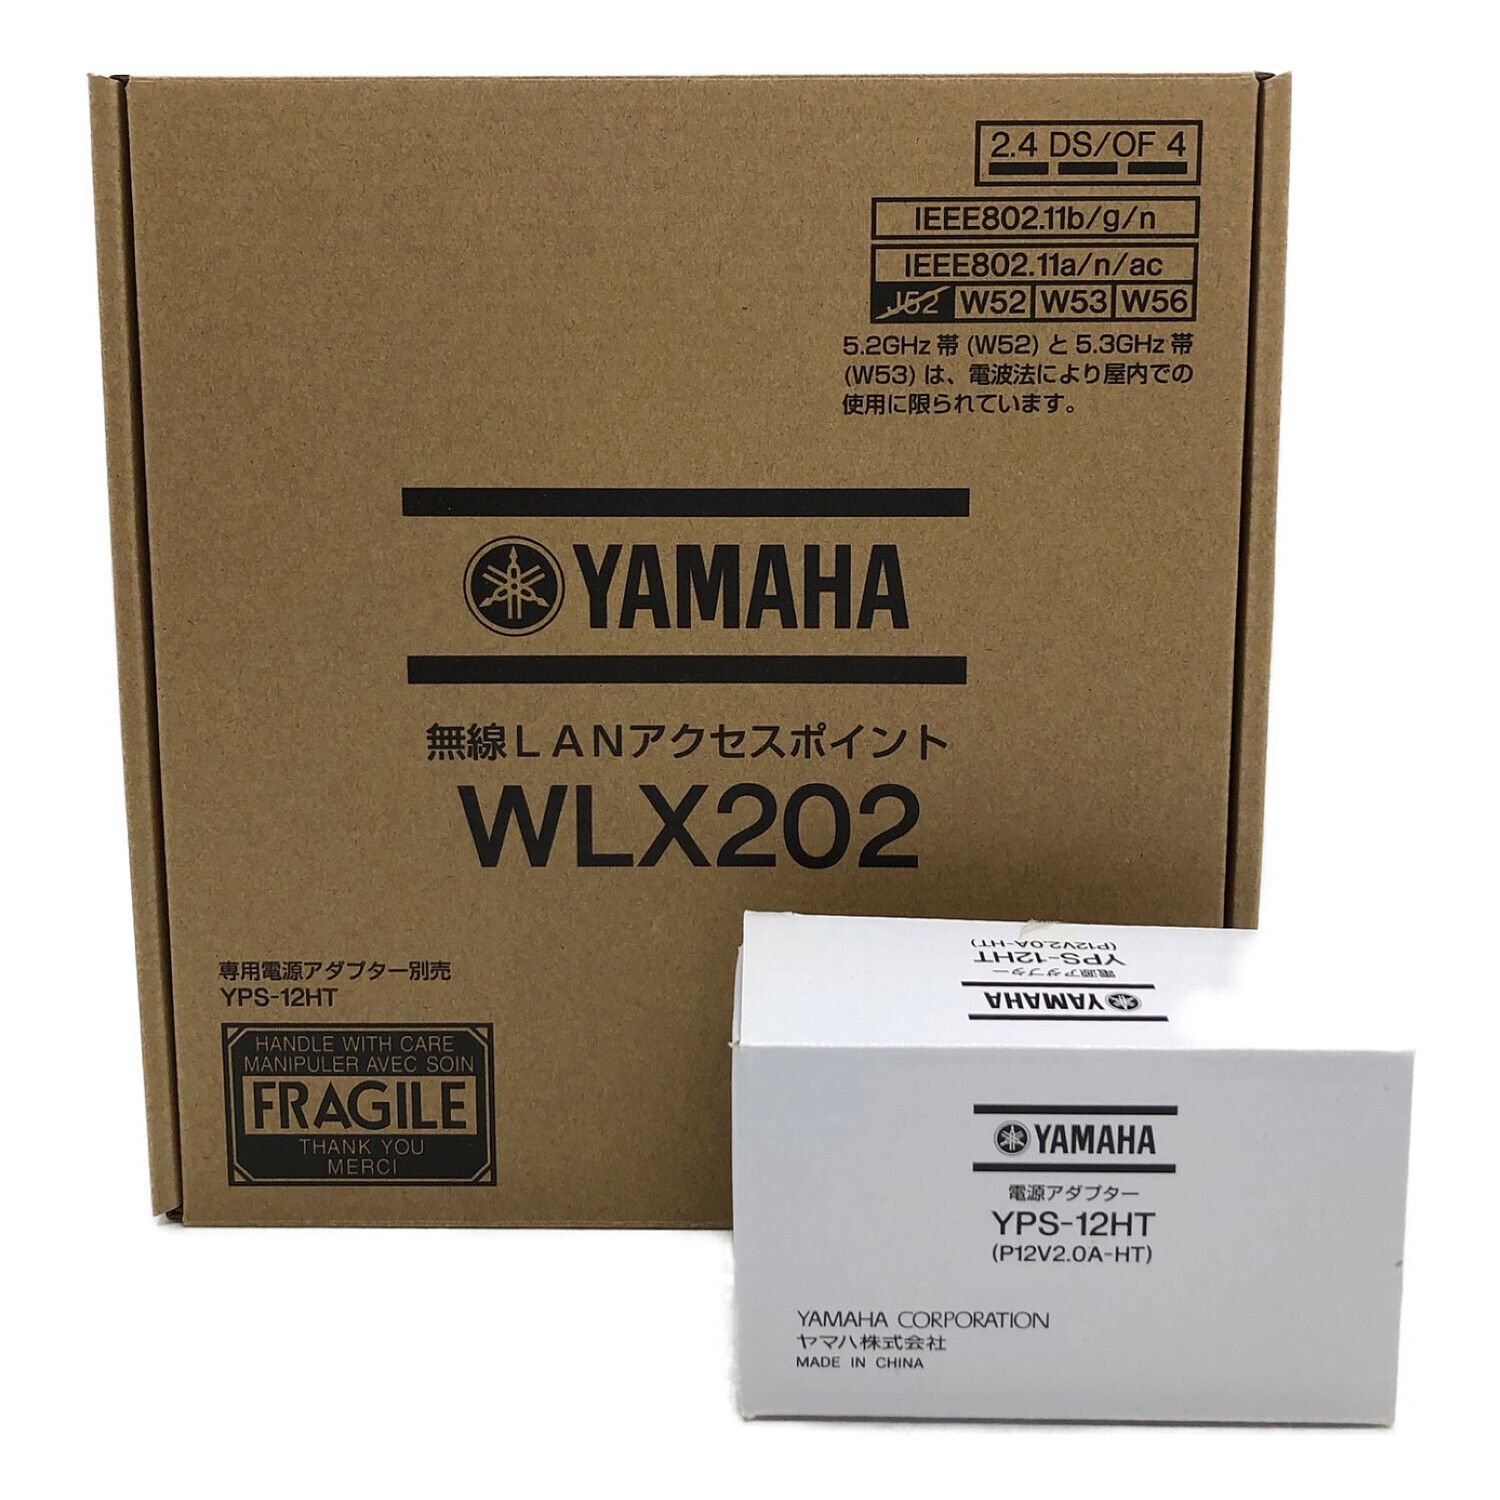 8,800円YAMAHA WLX202 無線LANアクセスポイント 5台